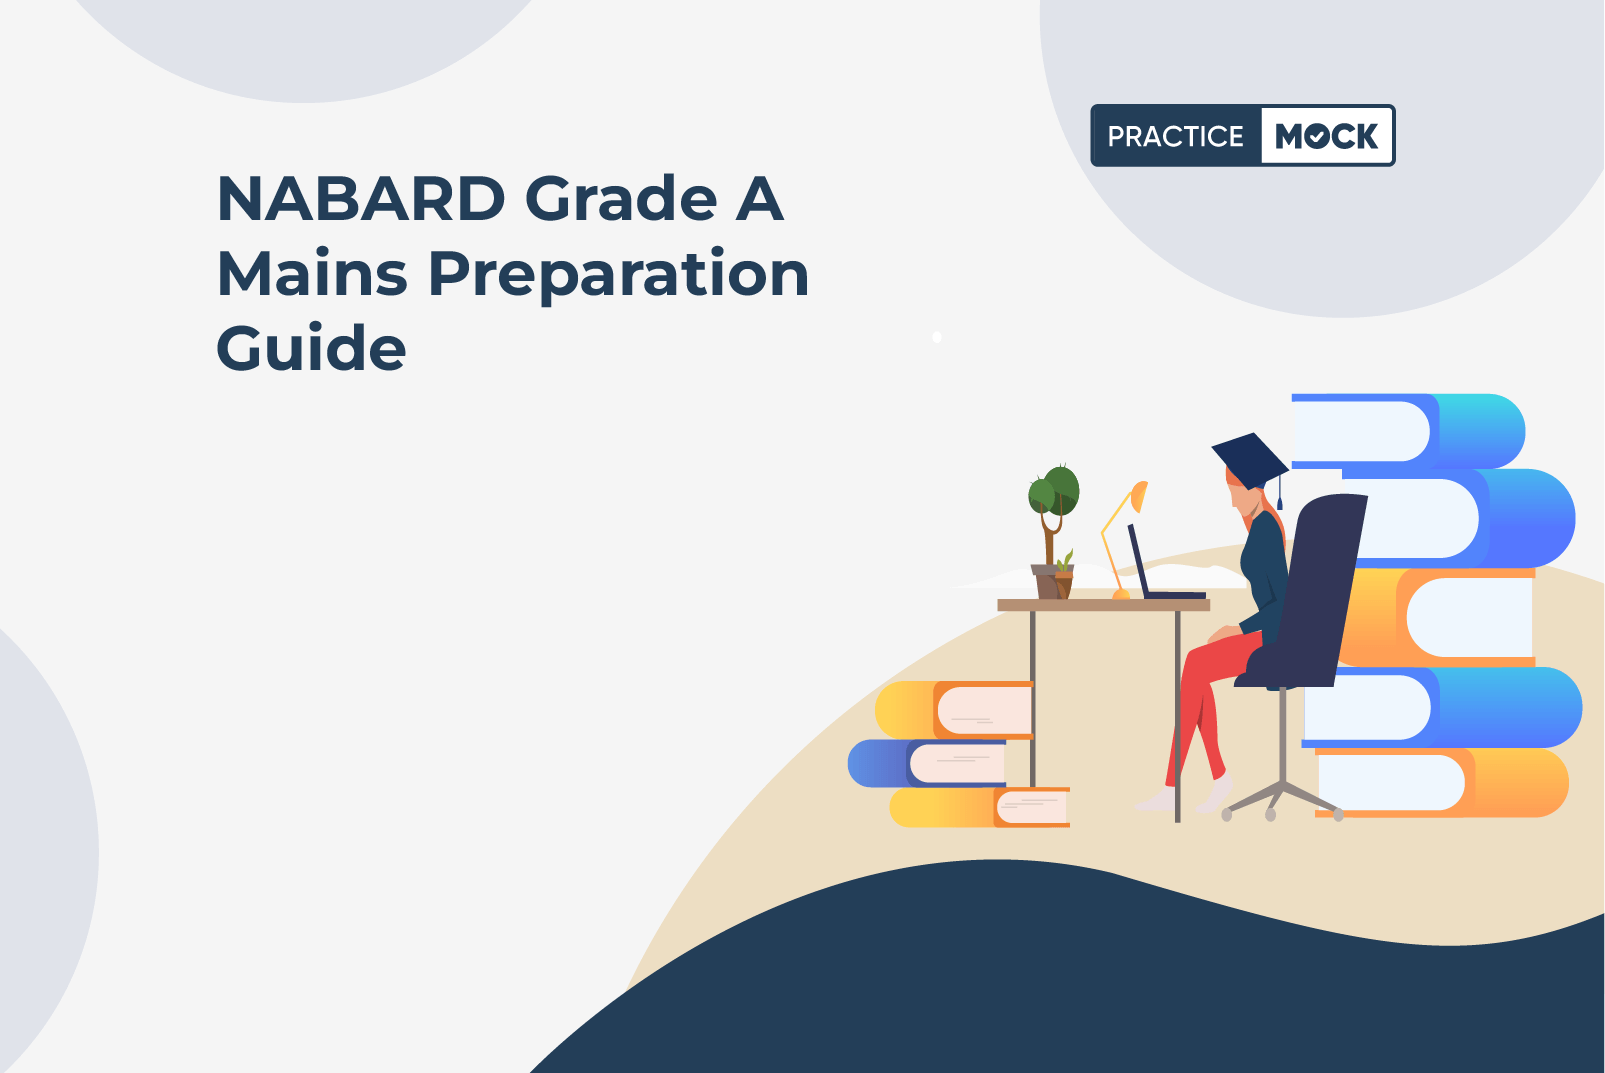 NABARD Grade A Mains Preparation Guide